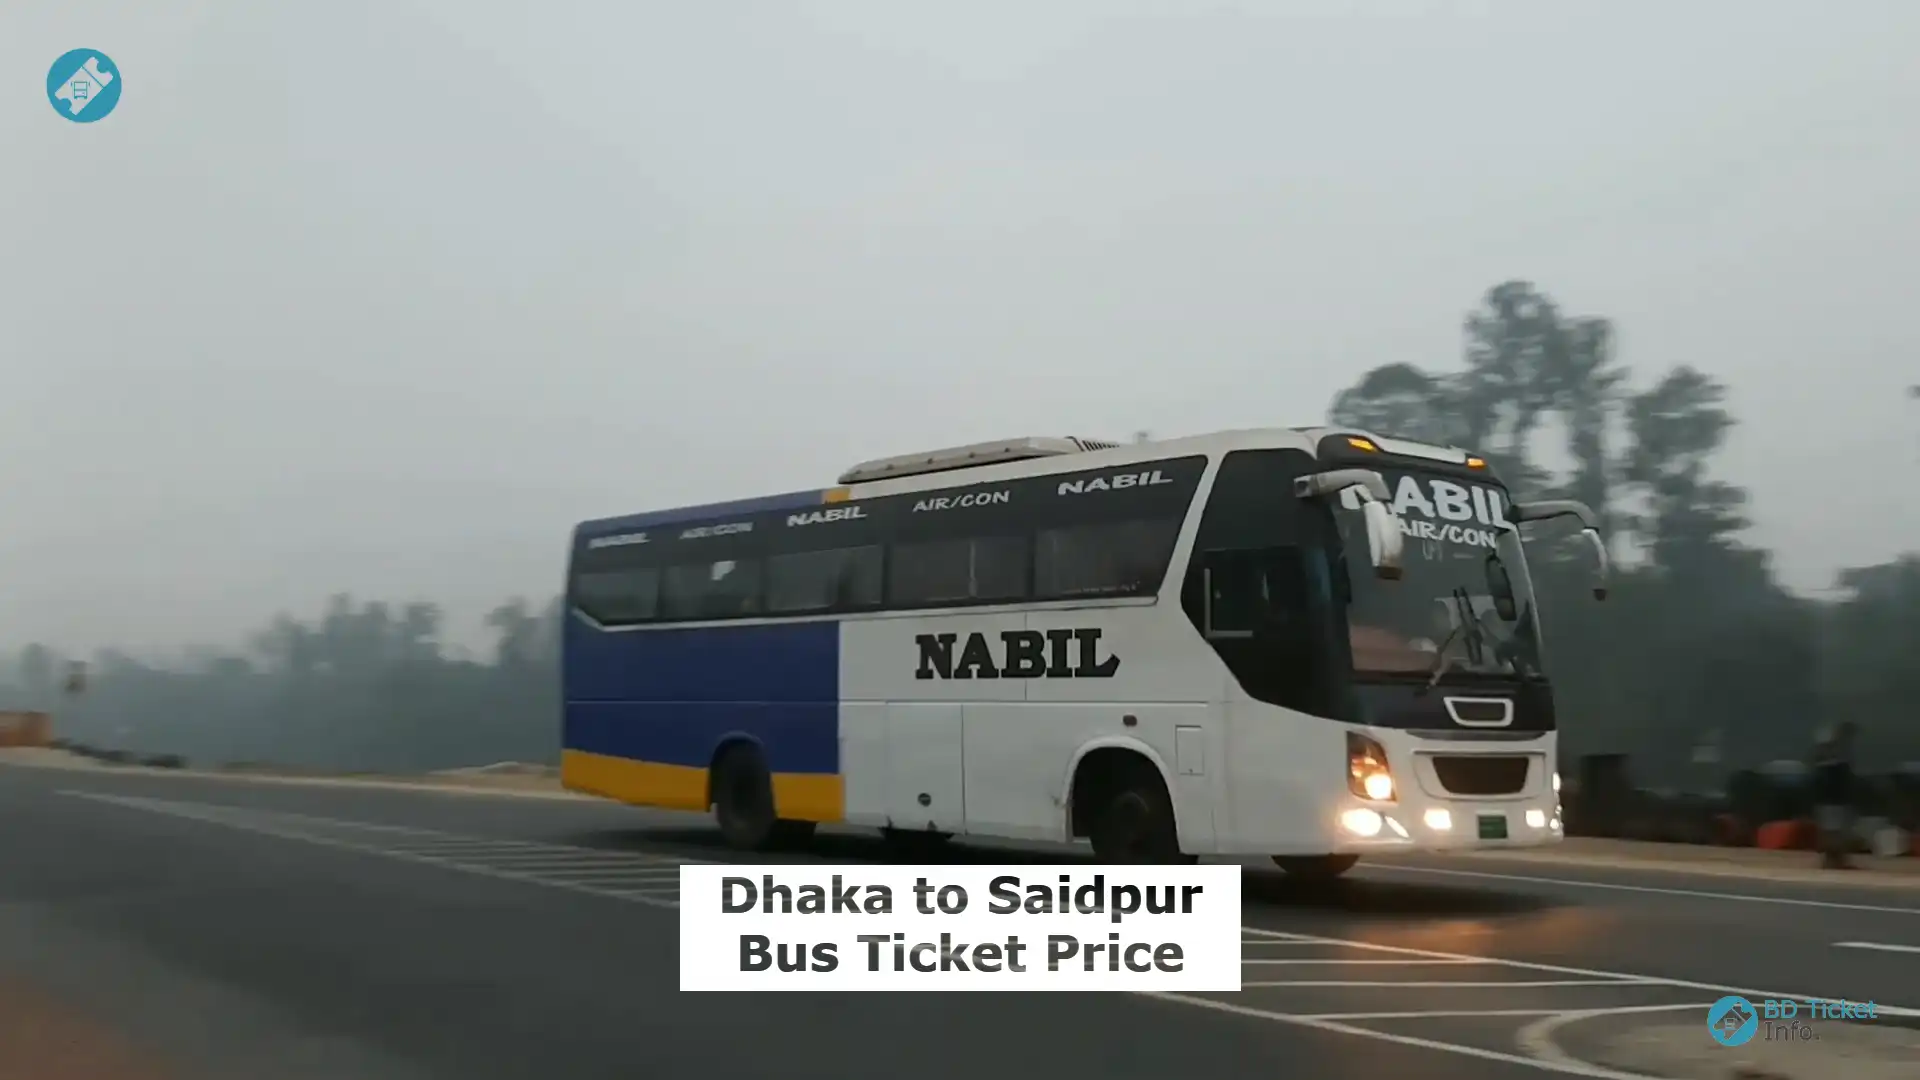 Dhaka to Saidpur Bus Ticket Price